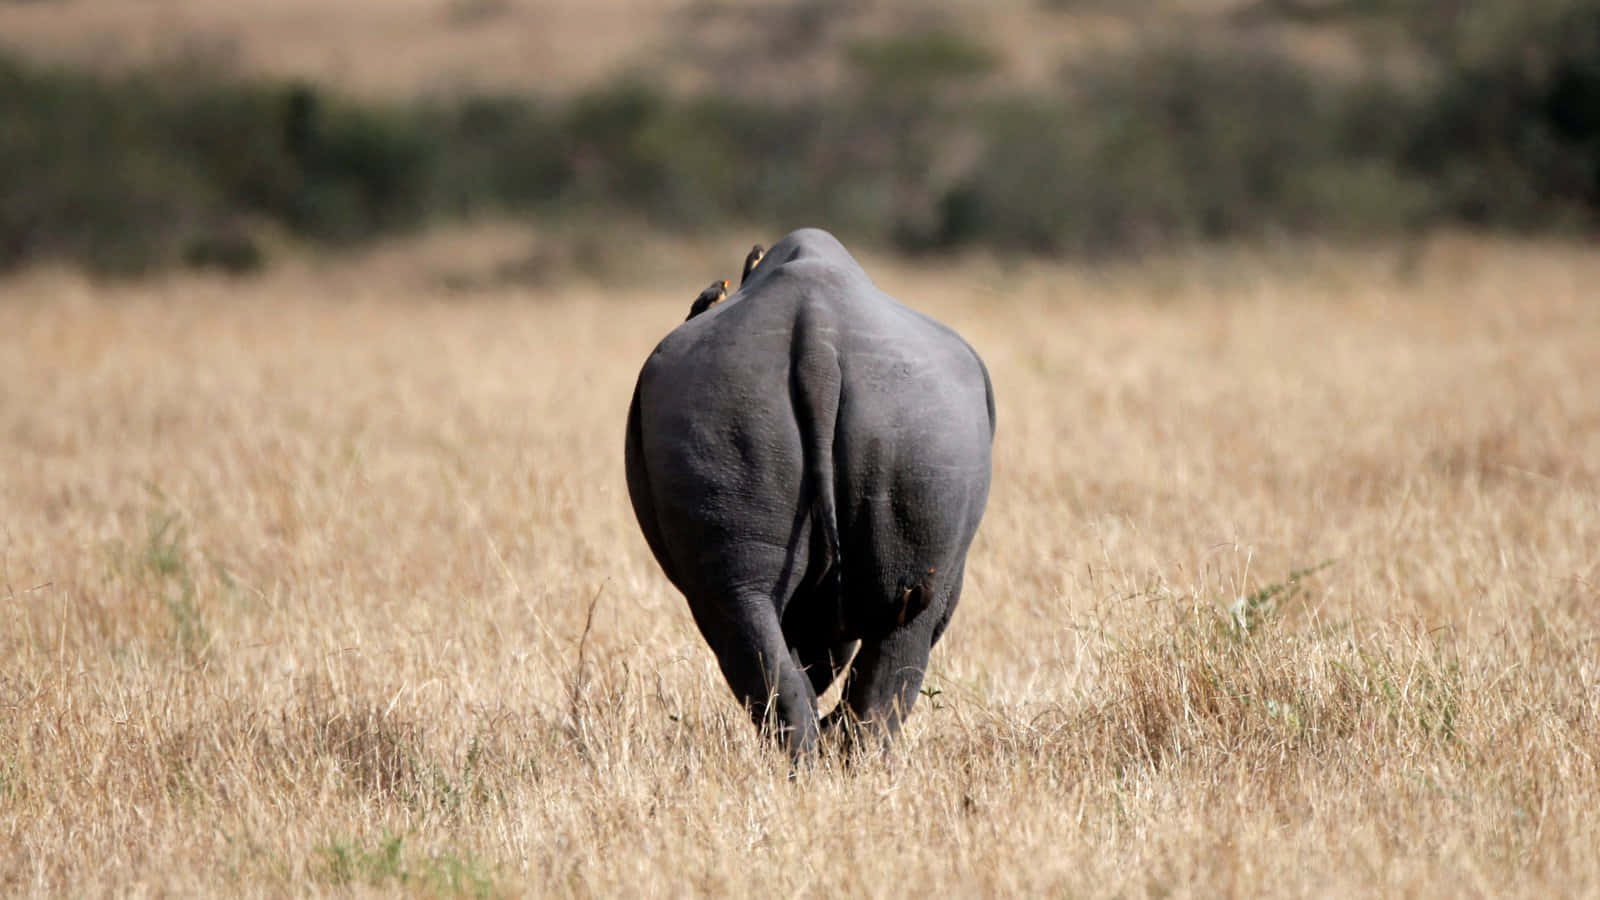 Imagenen Primer Plano De Un Rinoceronte En Su Hábitat Natural.